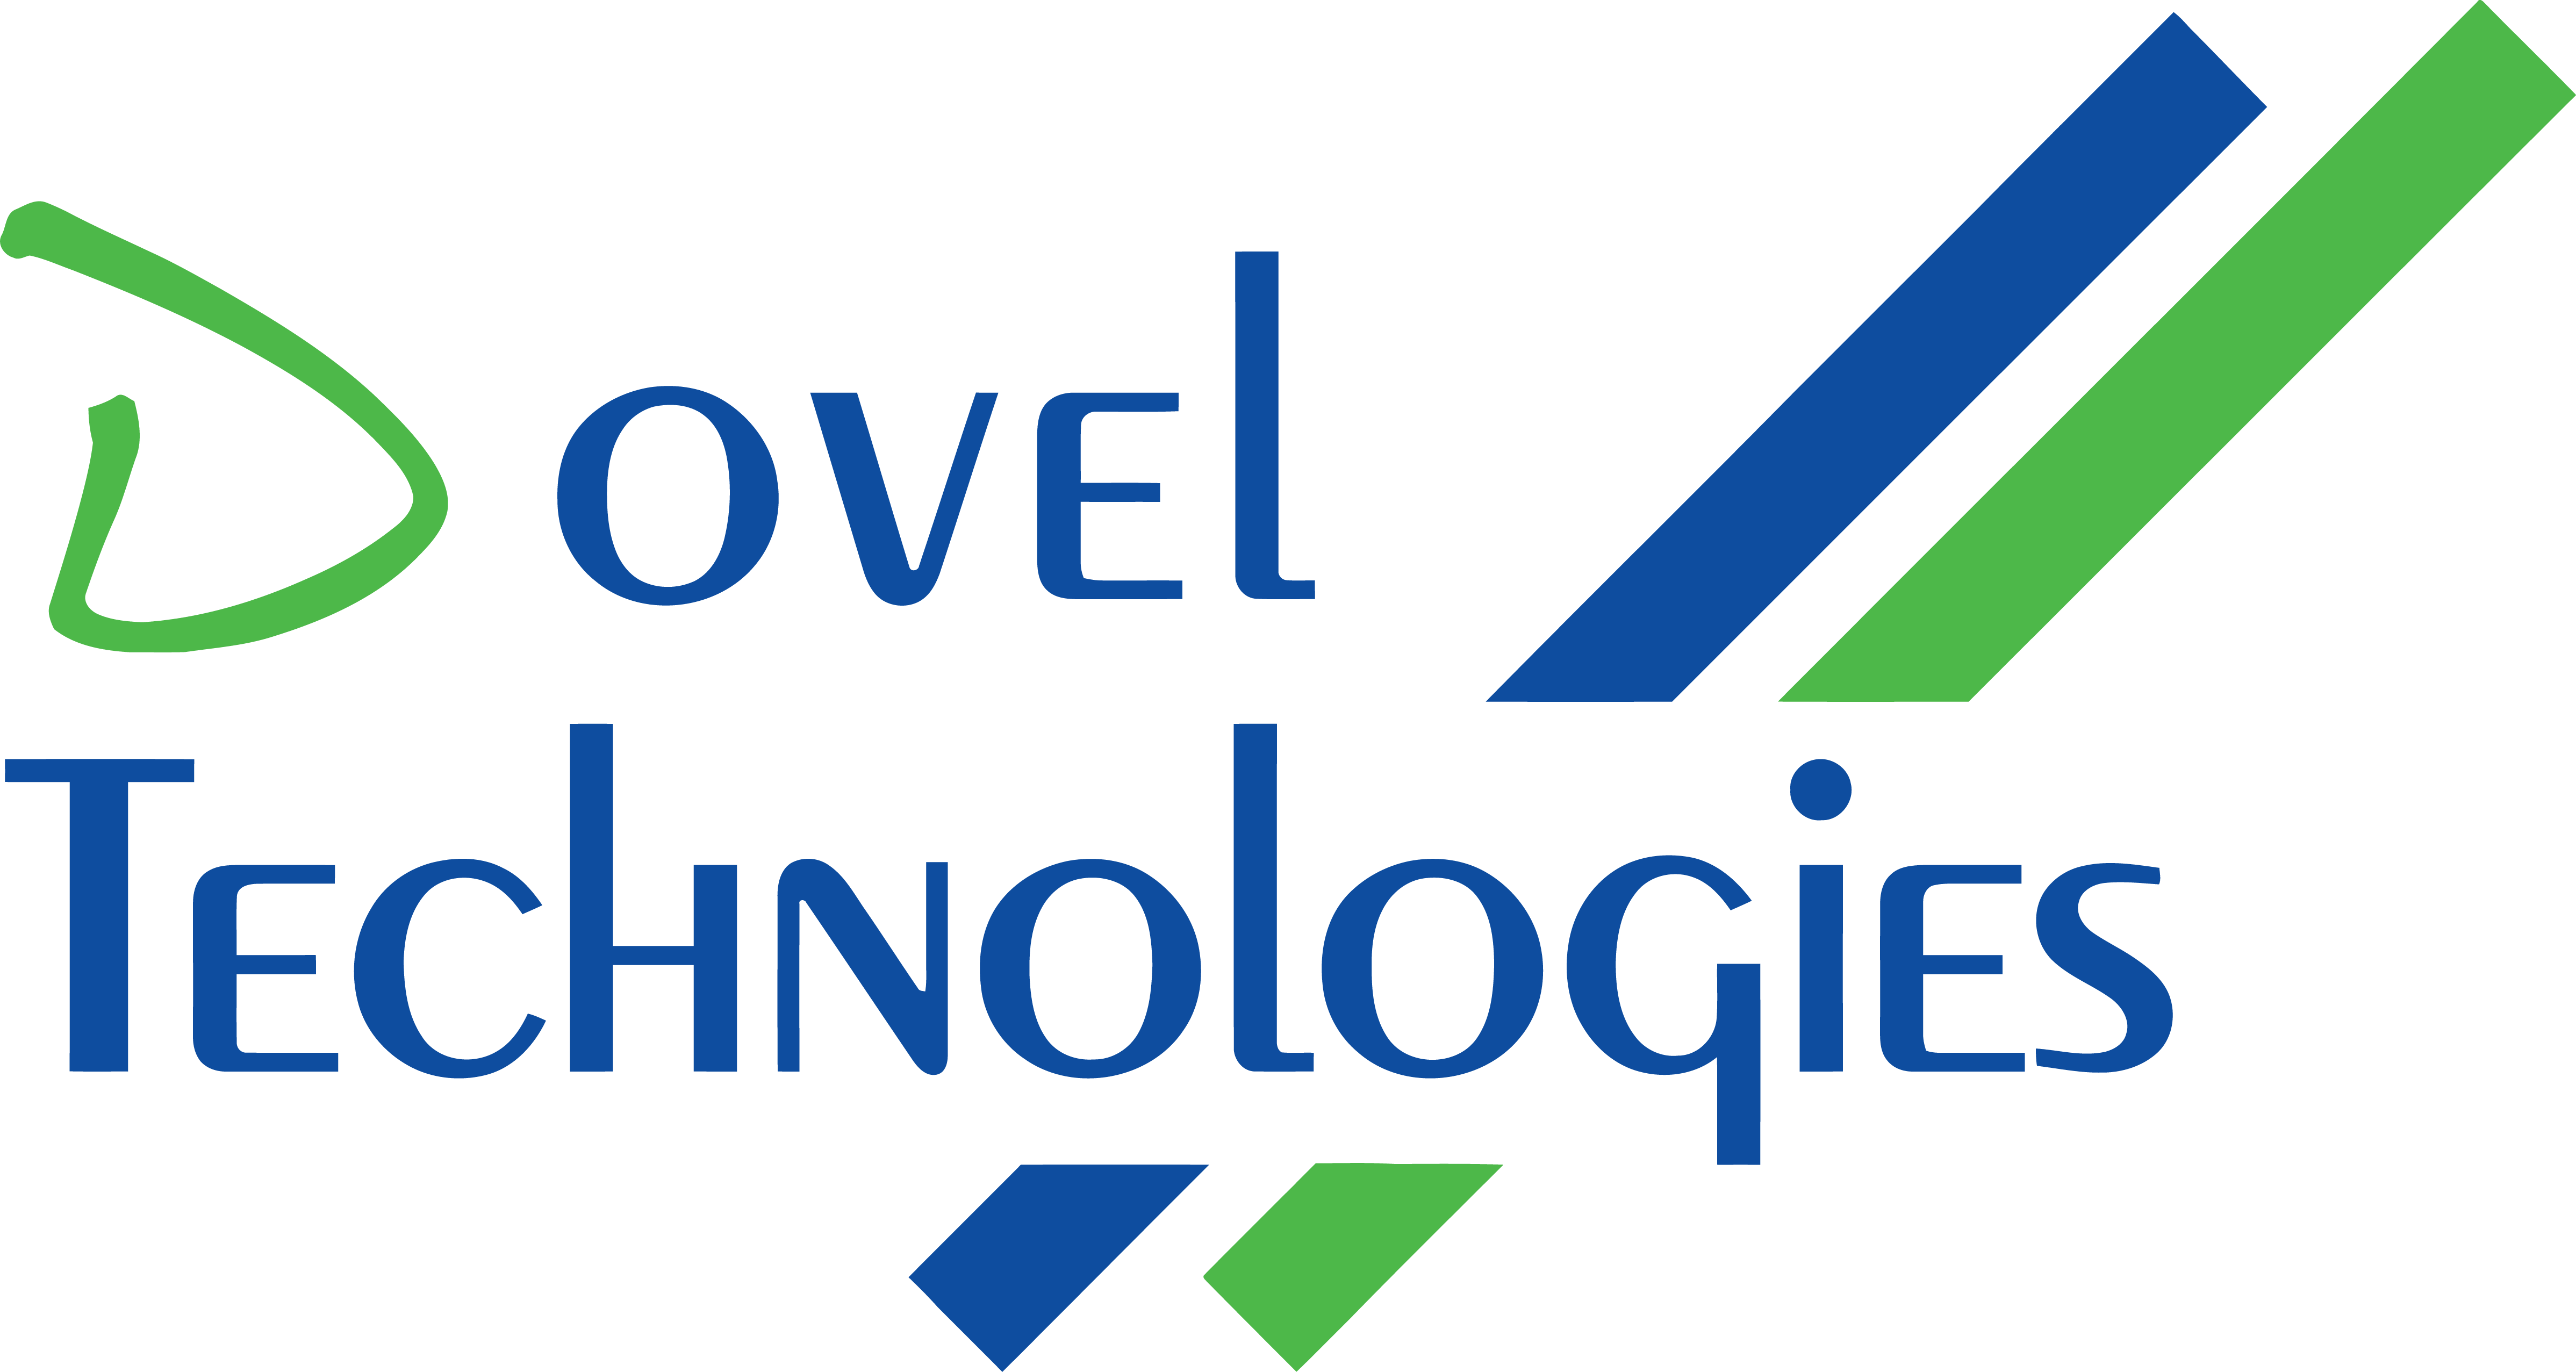 Dovel Technologies Company Logo